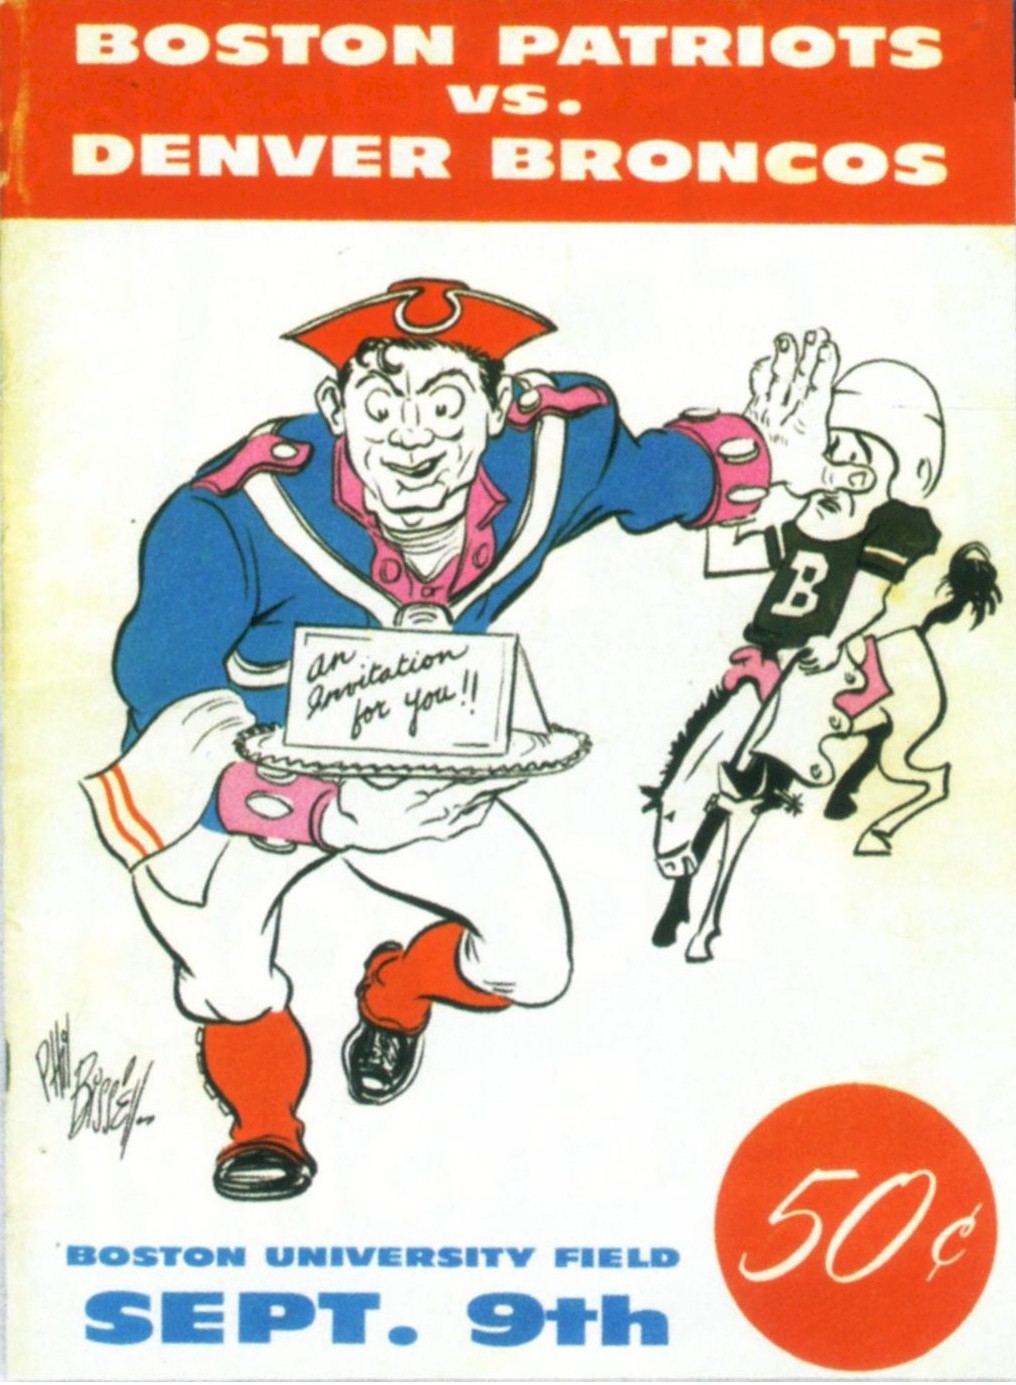 AFL Program: Houston Oilers vs. New York Titans (October 9, 1960)